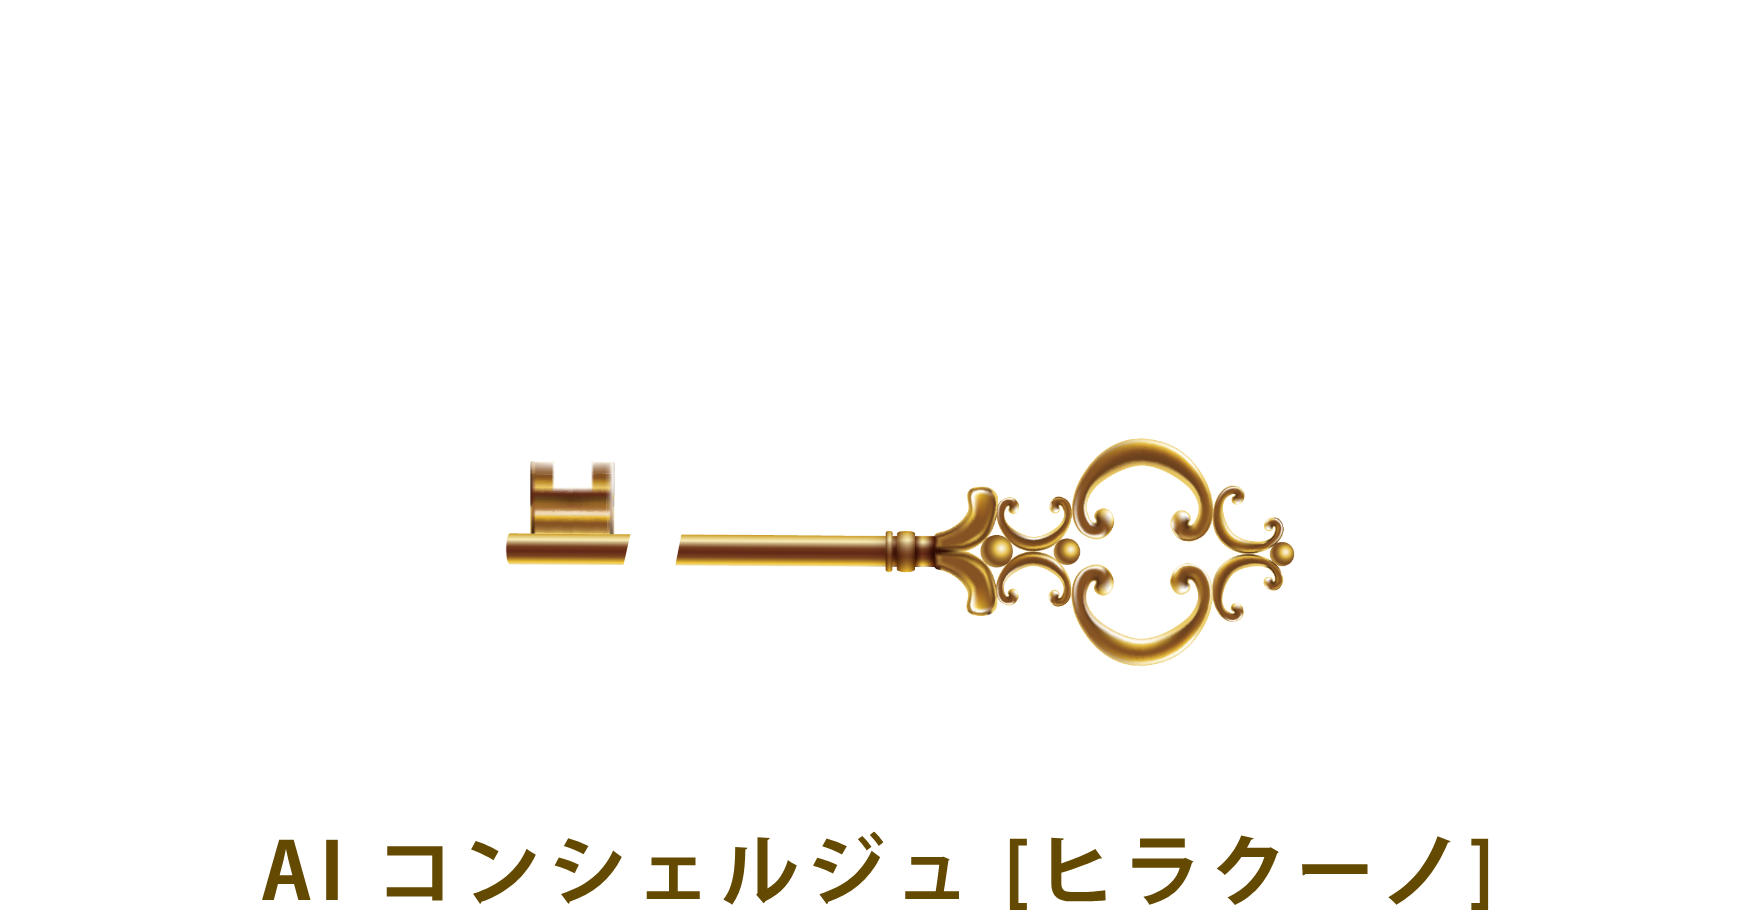 AI Concierge HIRACUNO